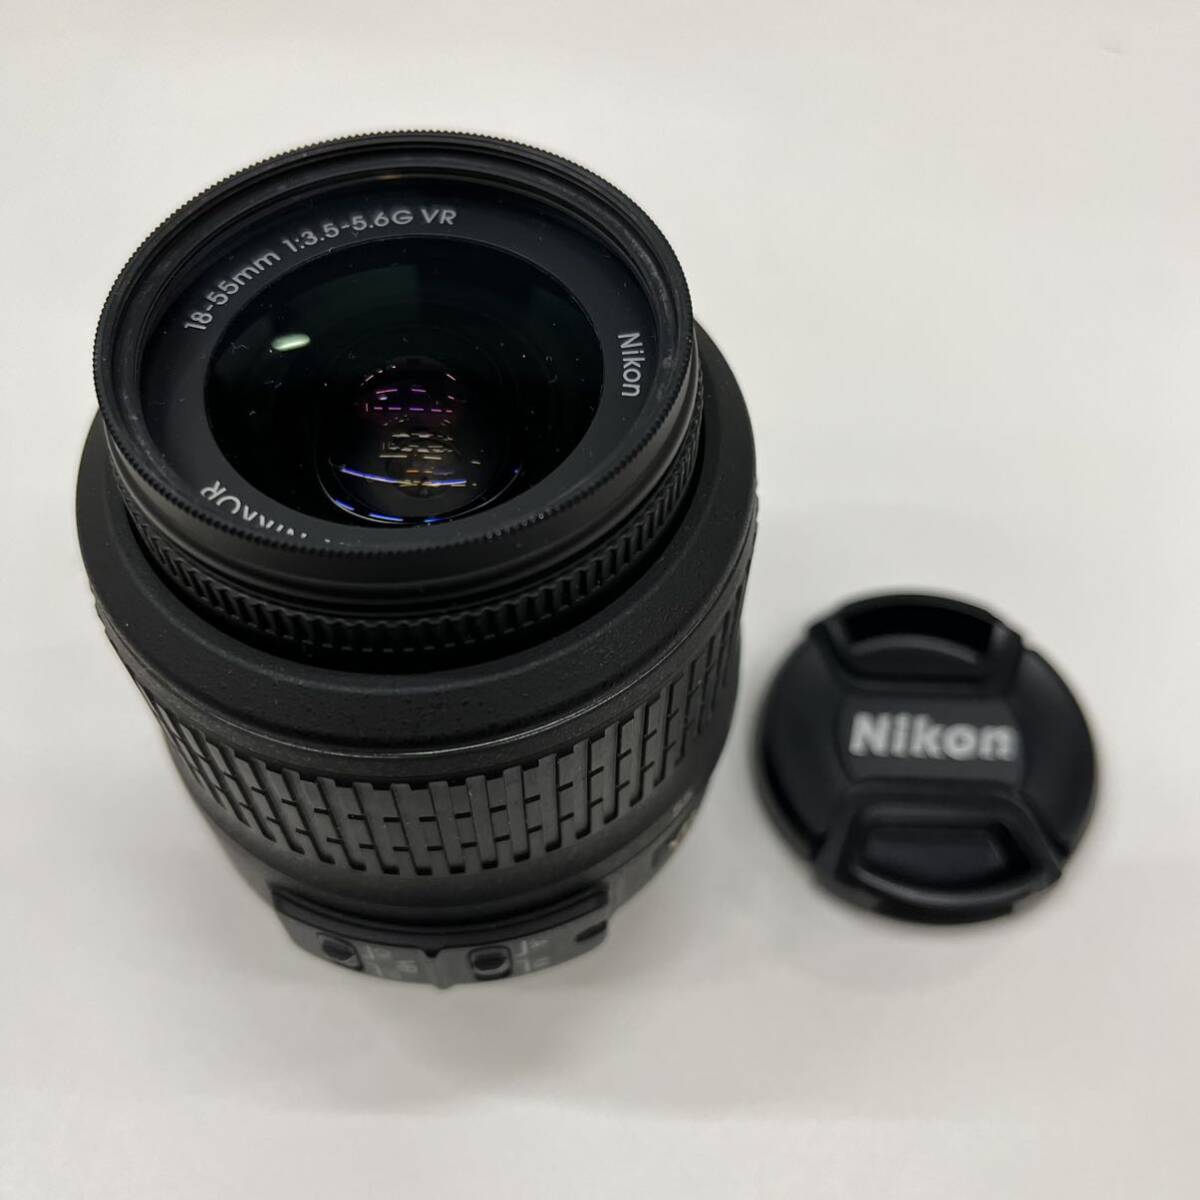 B4119【中古品】/ Nikon AF-S NIKKOR 18-55mm 1:3.5-5.6G レンズ VR DX SWM Aspherical ∞-0.28m/0.92ft 52mm ニコン_画像1